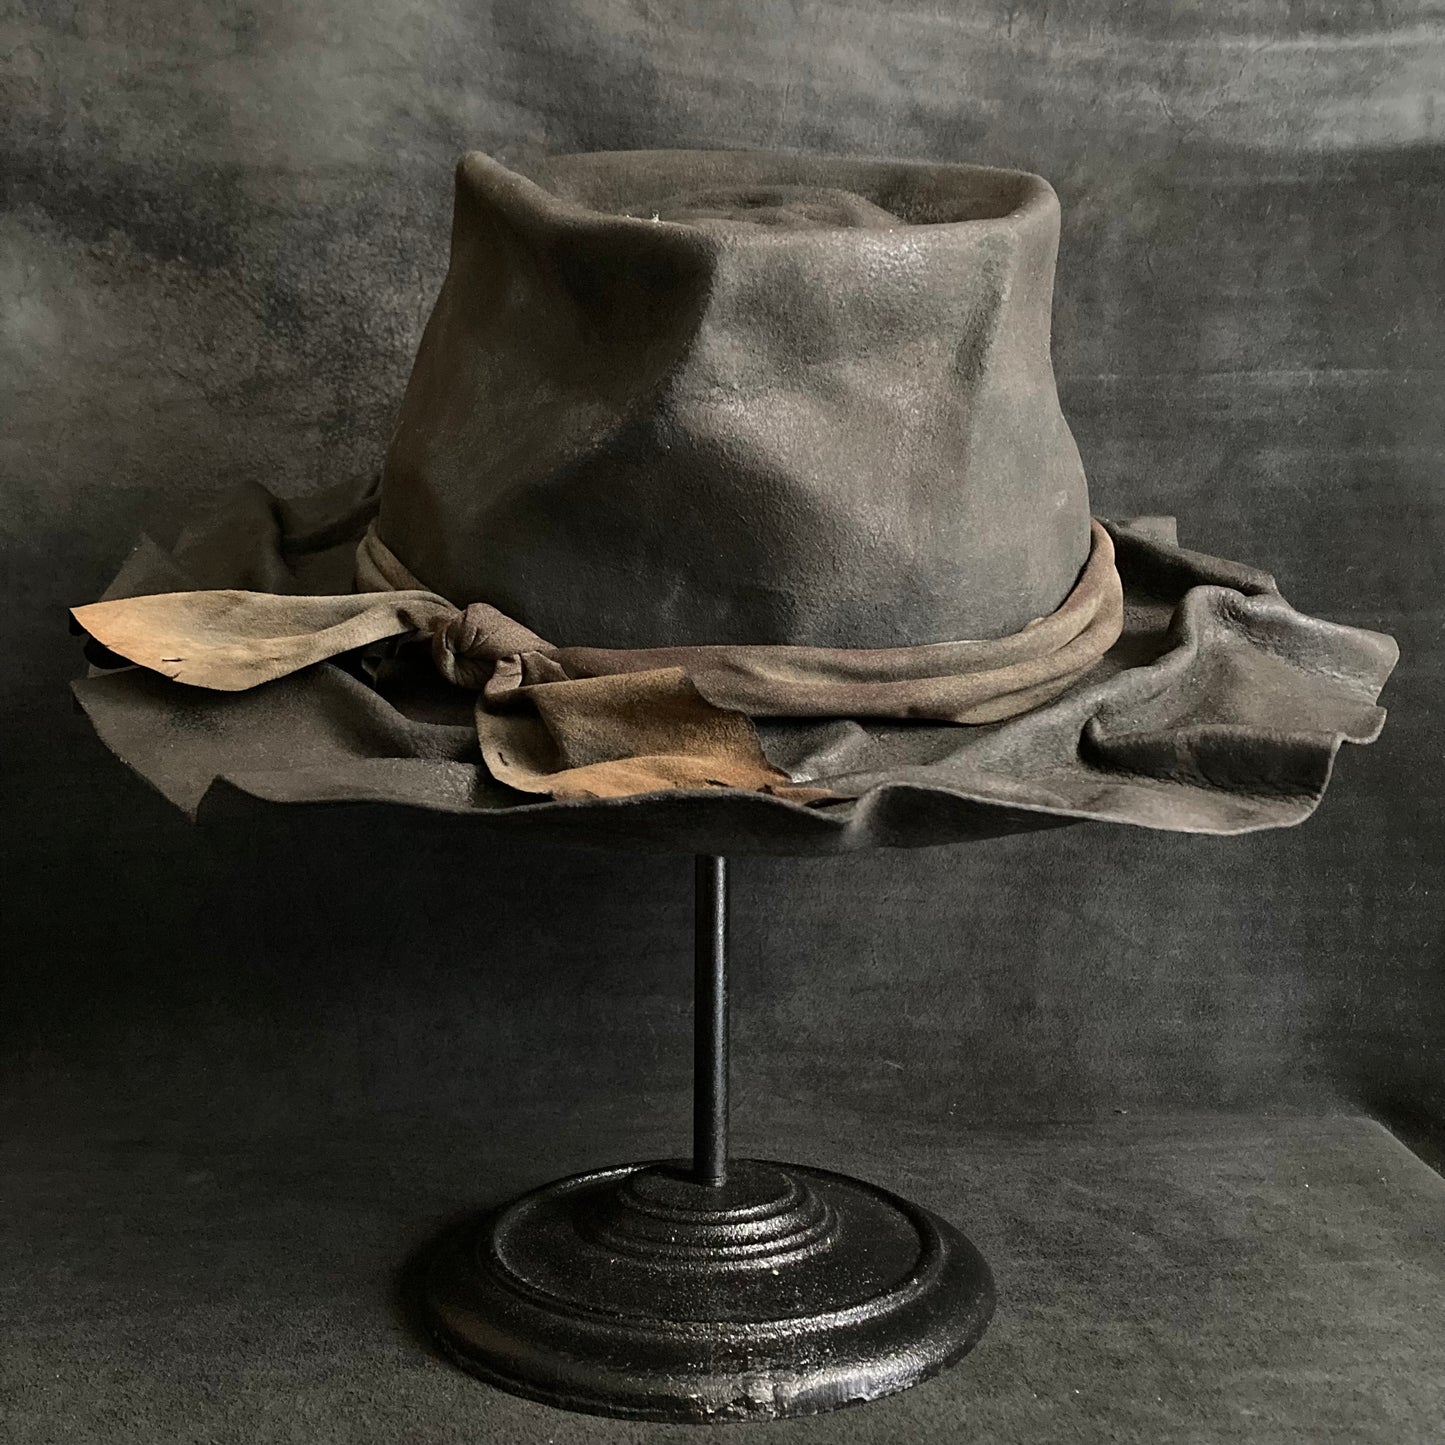 Charcoal folds line fedora hat